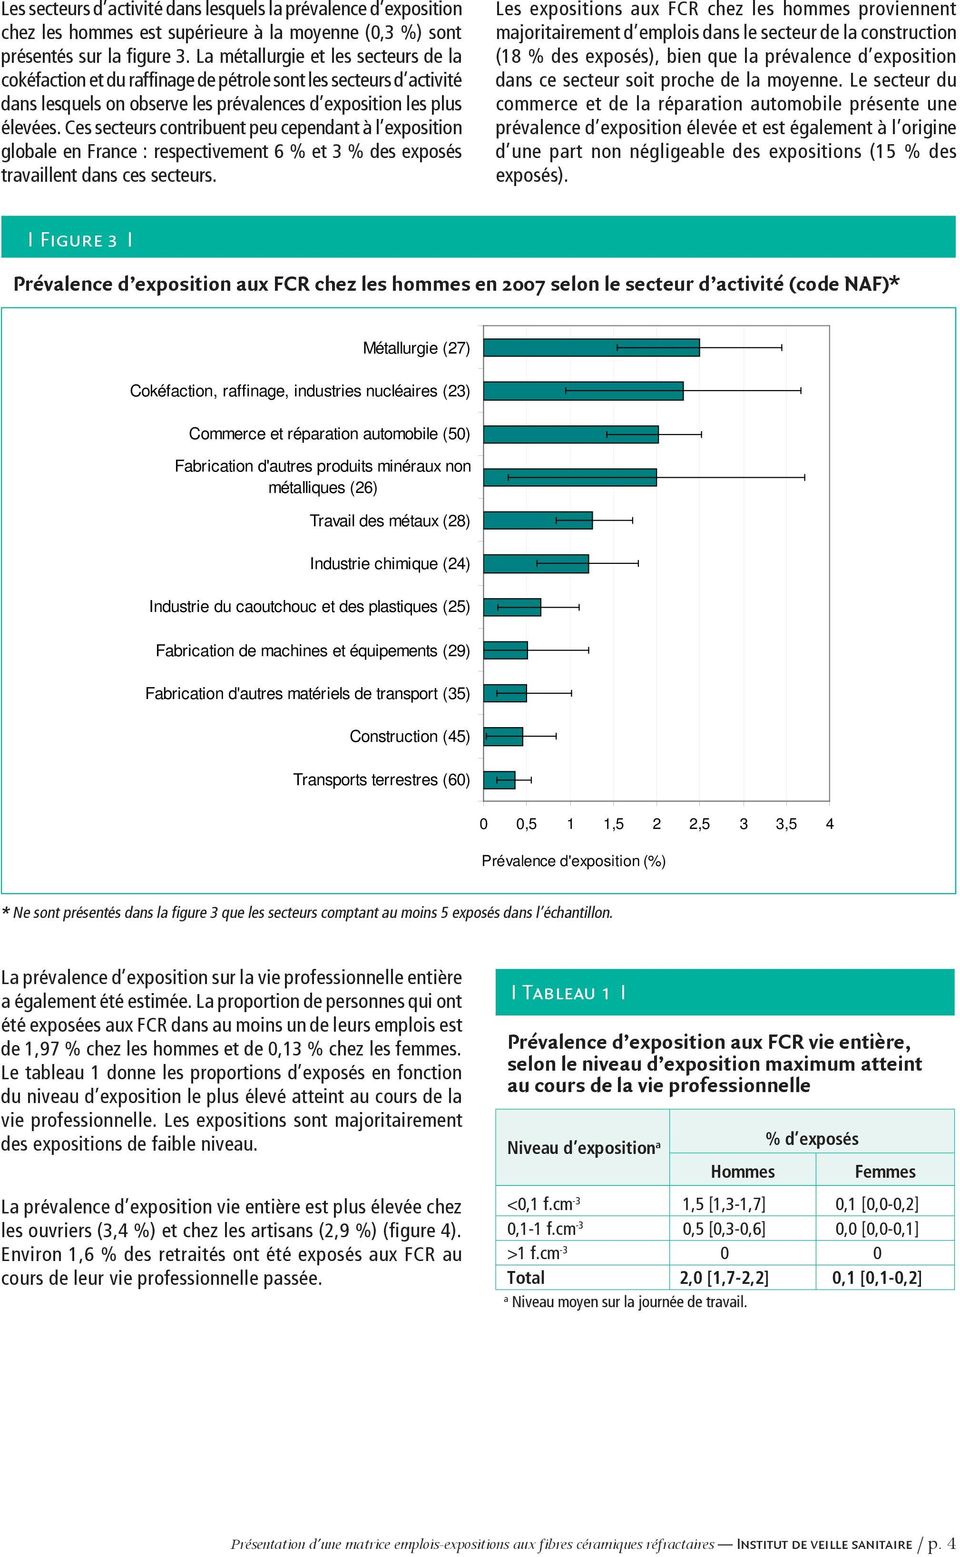 Ces secteurs contribuent peu cependant à l exposition globale en France : respectivement 6 % et 3 % des exposés travaillent dans ces secteurs.